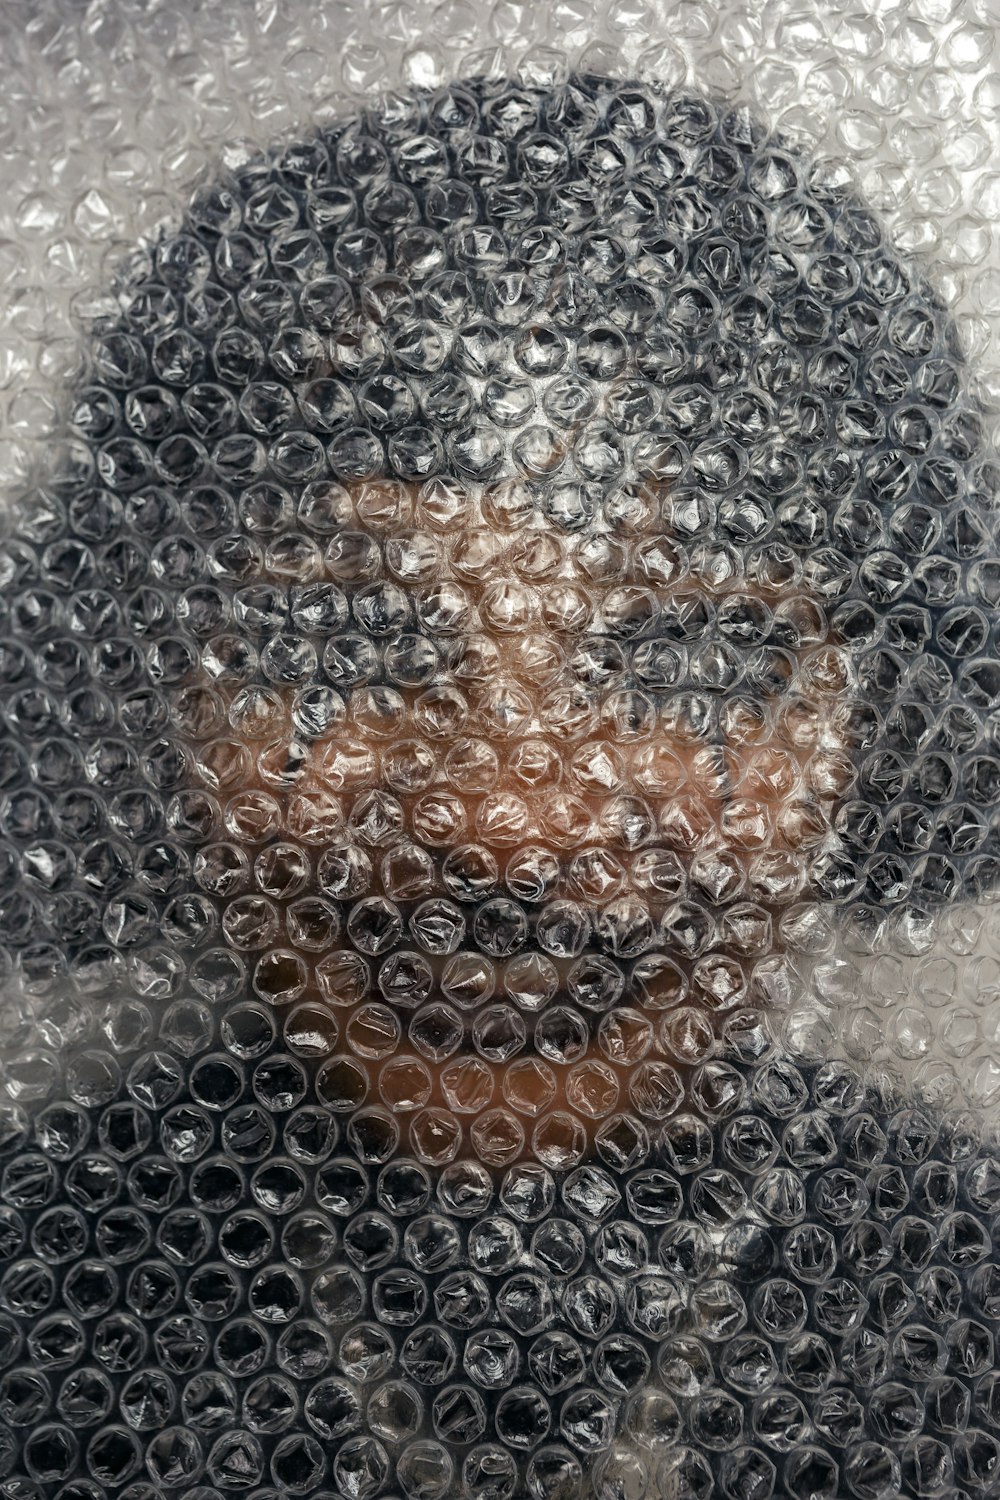 a close up of a person's face through a bubble